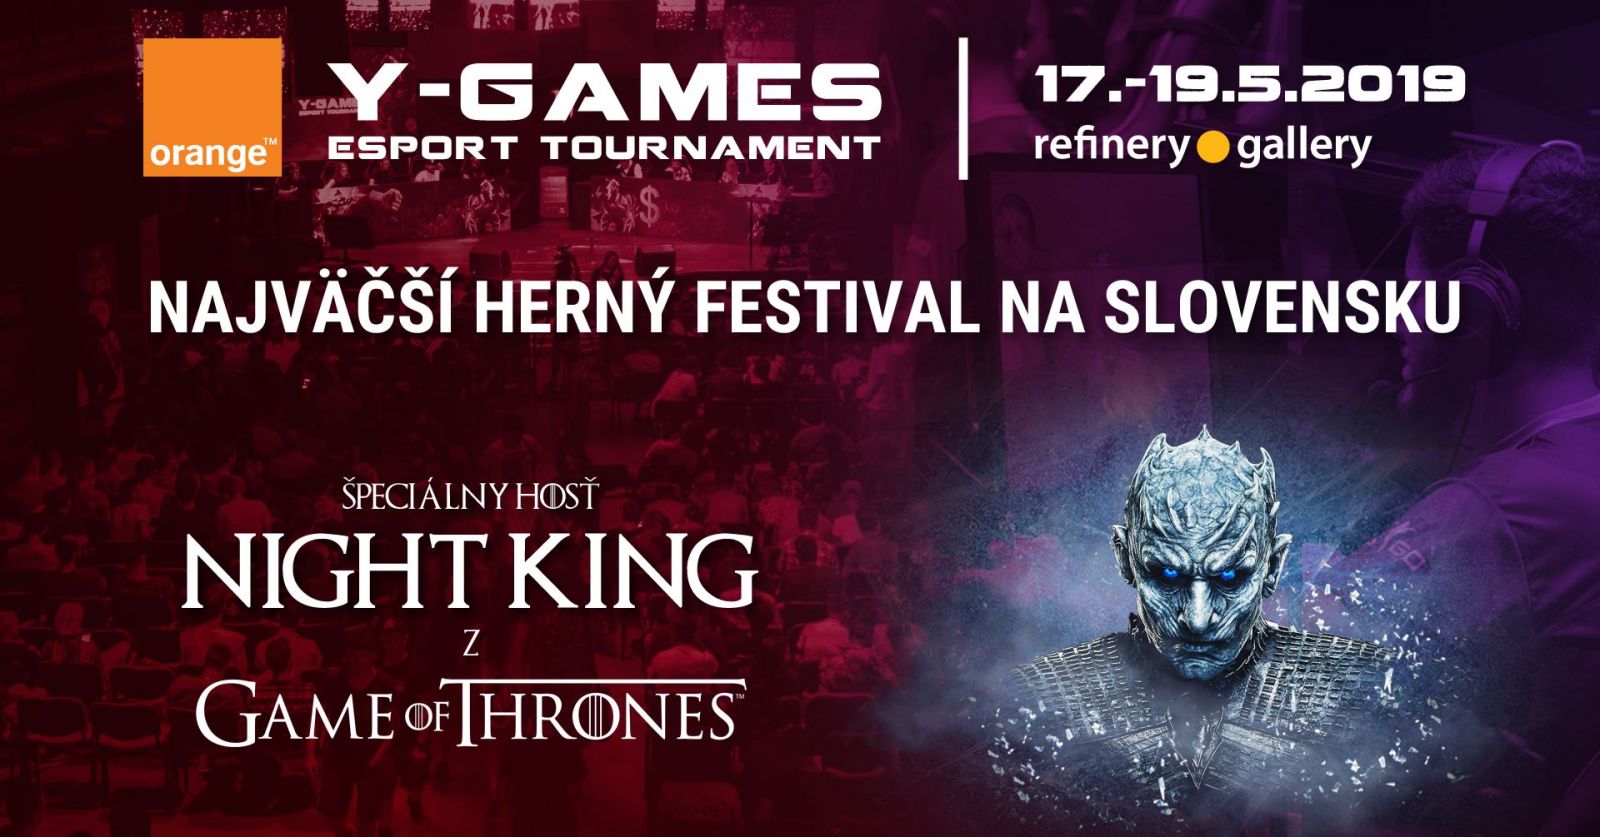 Už tento víkend dorazí do Bratislavy Night King! Festivaly Y-Games a Y-Con musíš zažiť, ak miluješ hry, youtuberov či streamerov